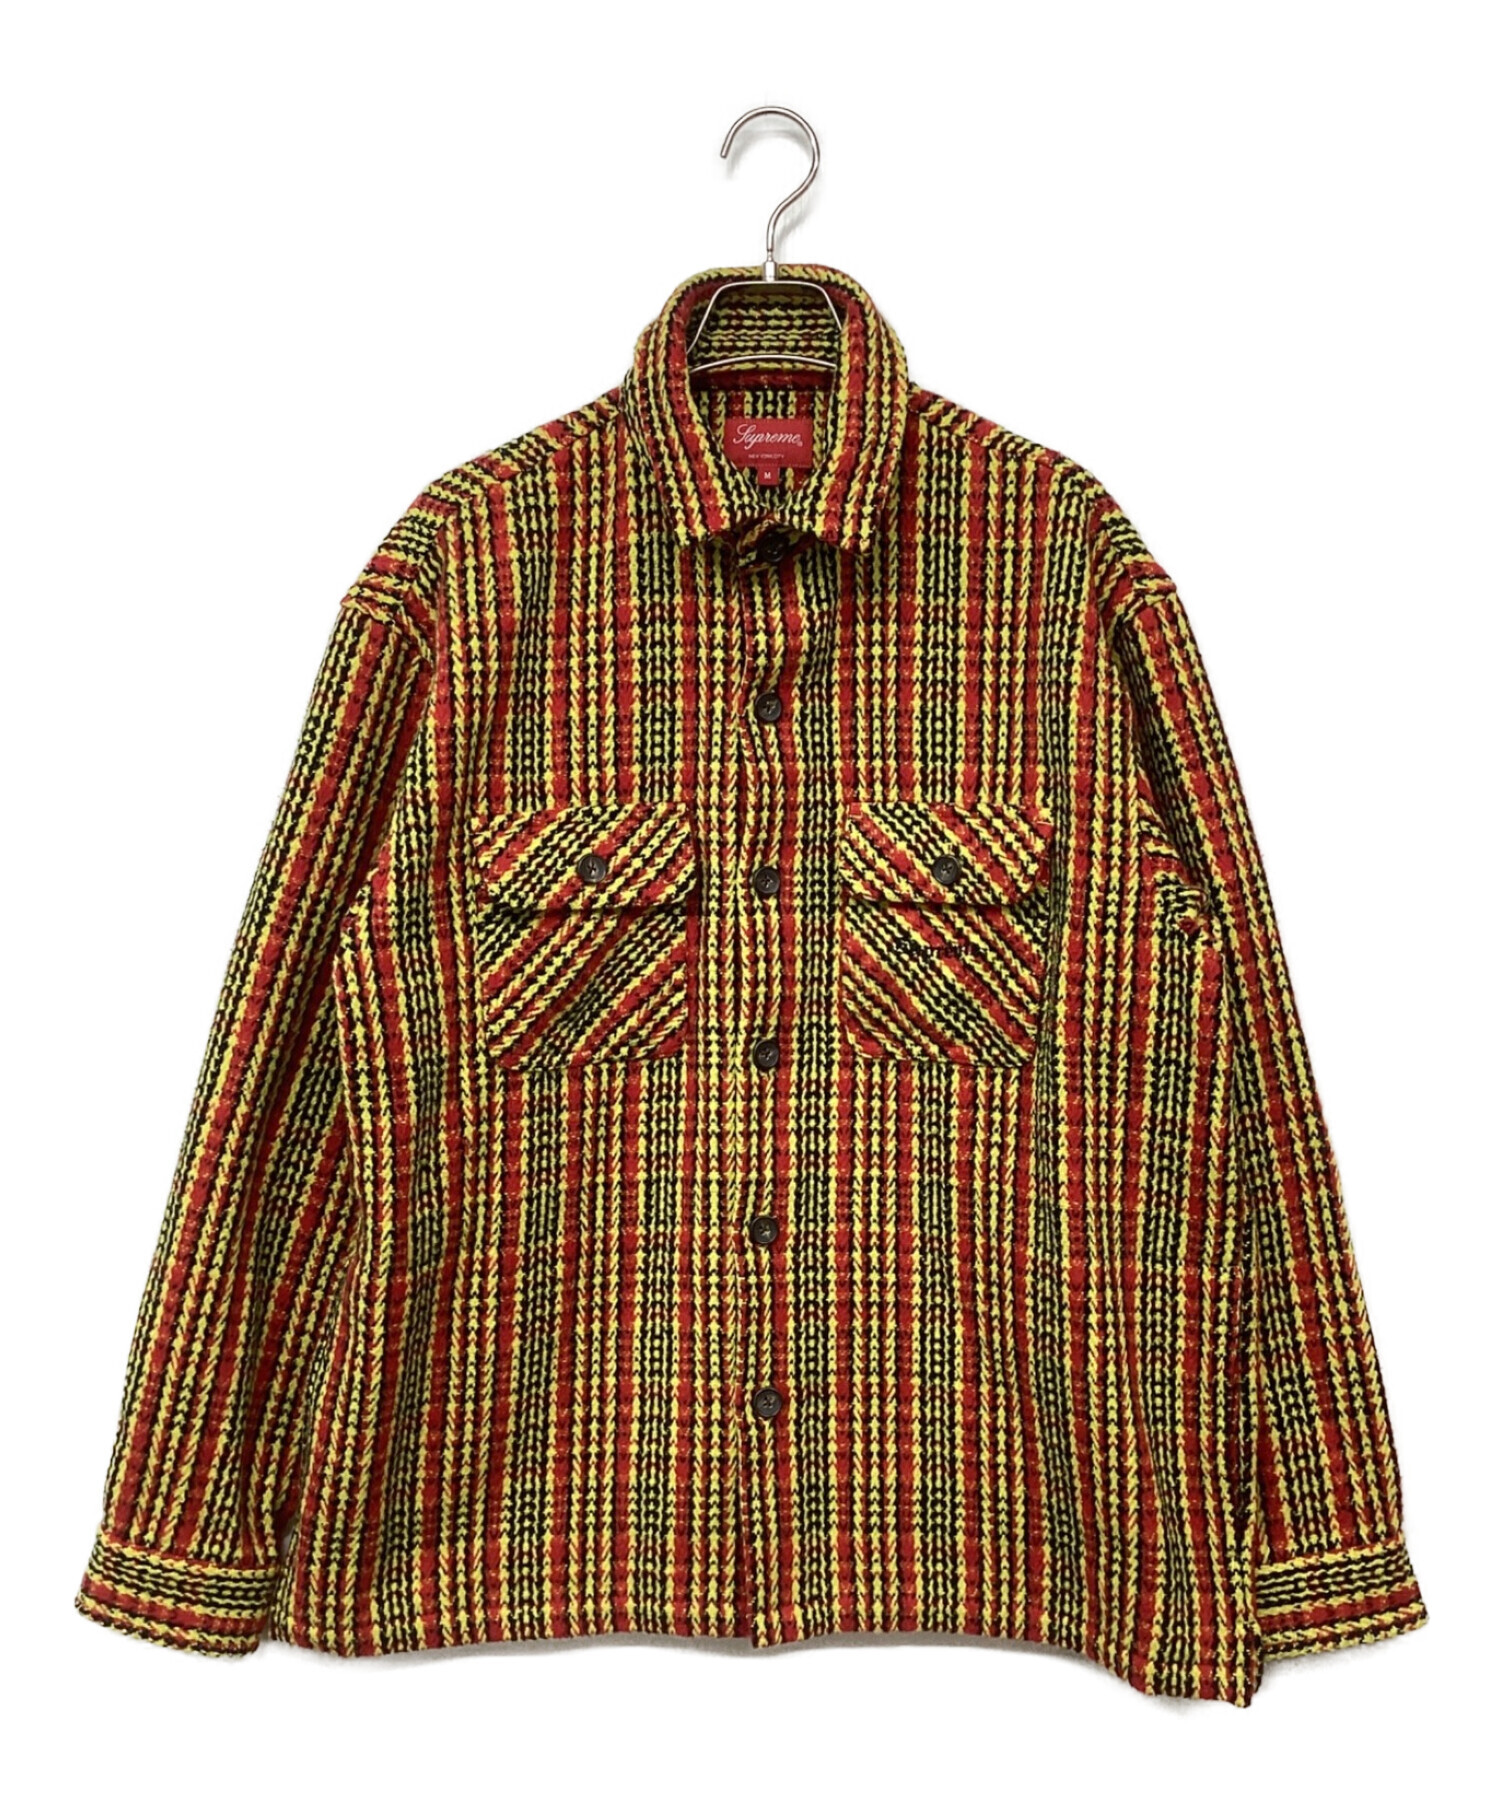 SUPREME (シュプリーム) Heavy Flannel Shirt/ヘビーフランネルシャツ レッド×イエロー サイズ:M